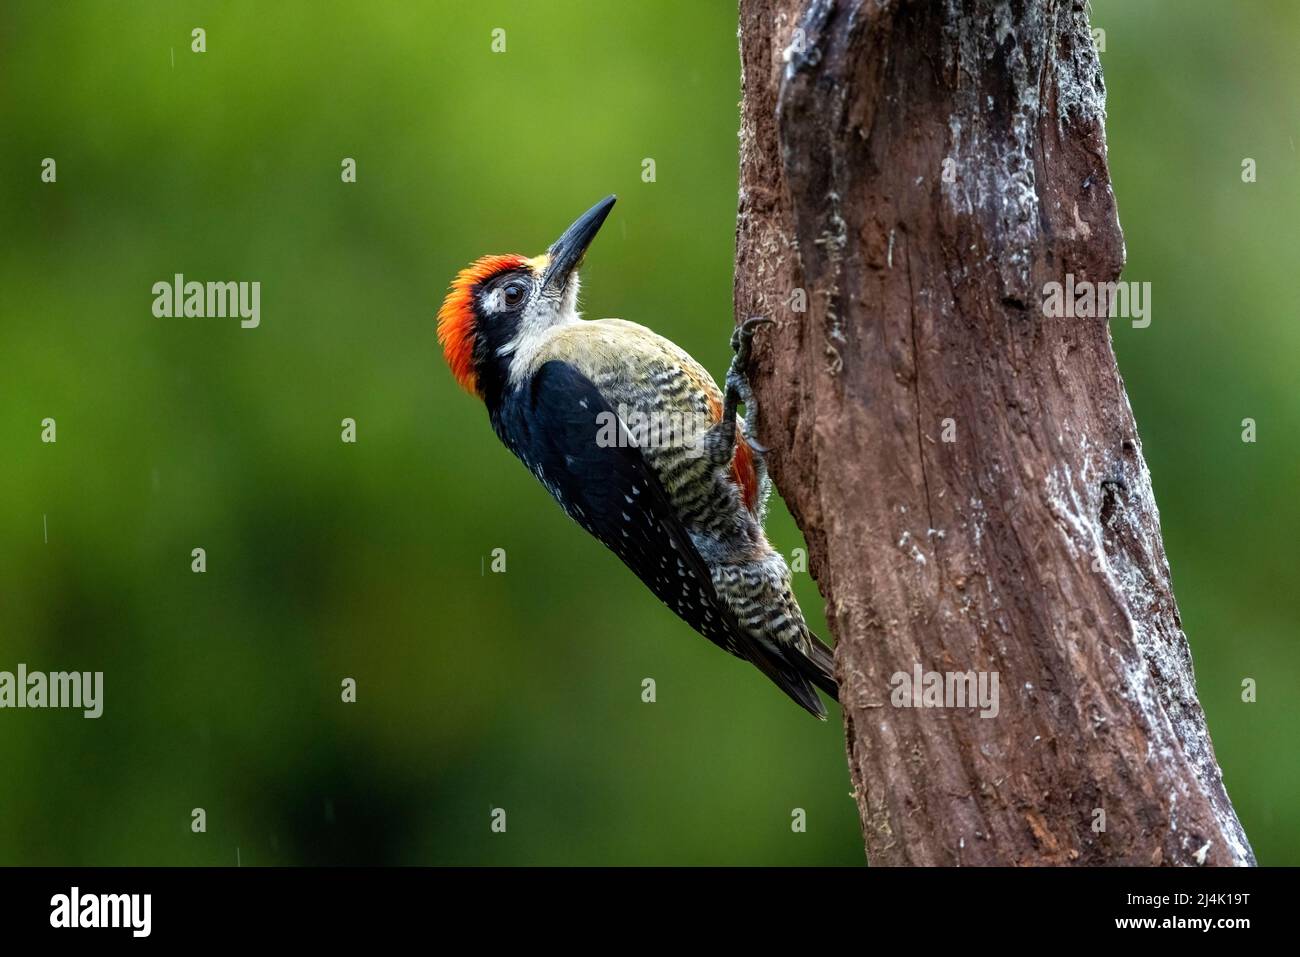 Male Black-cheeked woodpecker (Melanerpes pucherani) - La Laguna del Lagarto Eco-Lodge, Boca Tapada, Costa Rica Stock Photo